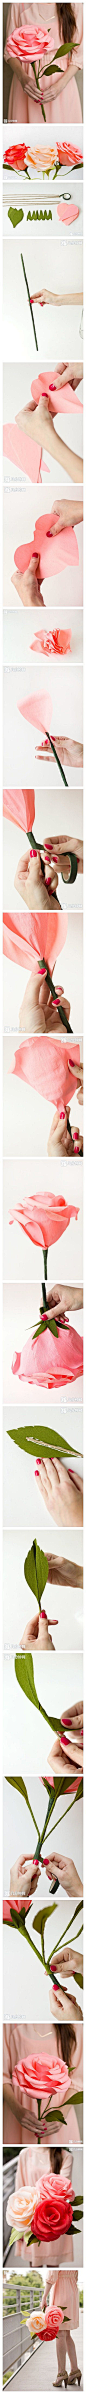 手工DIY 纸艺 手作 教程 教你手工制作巨型纸玫瑰 